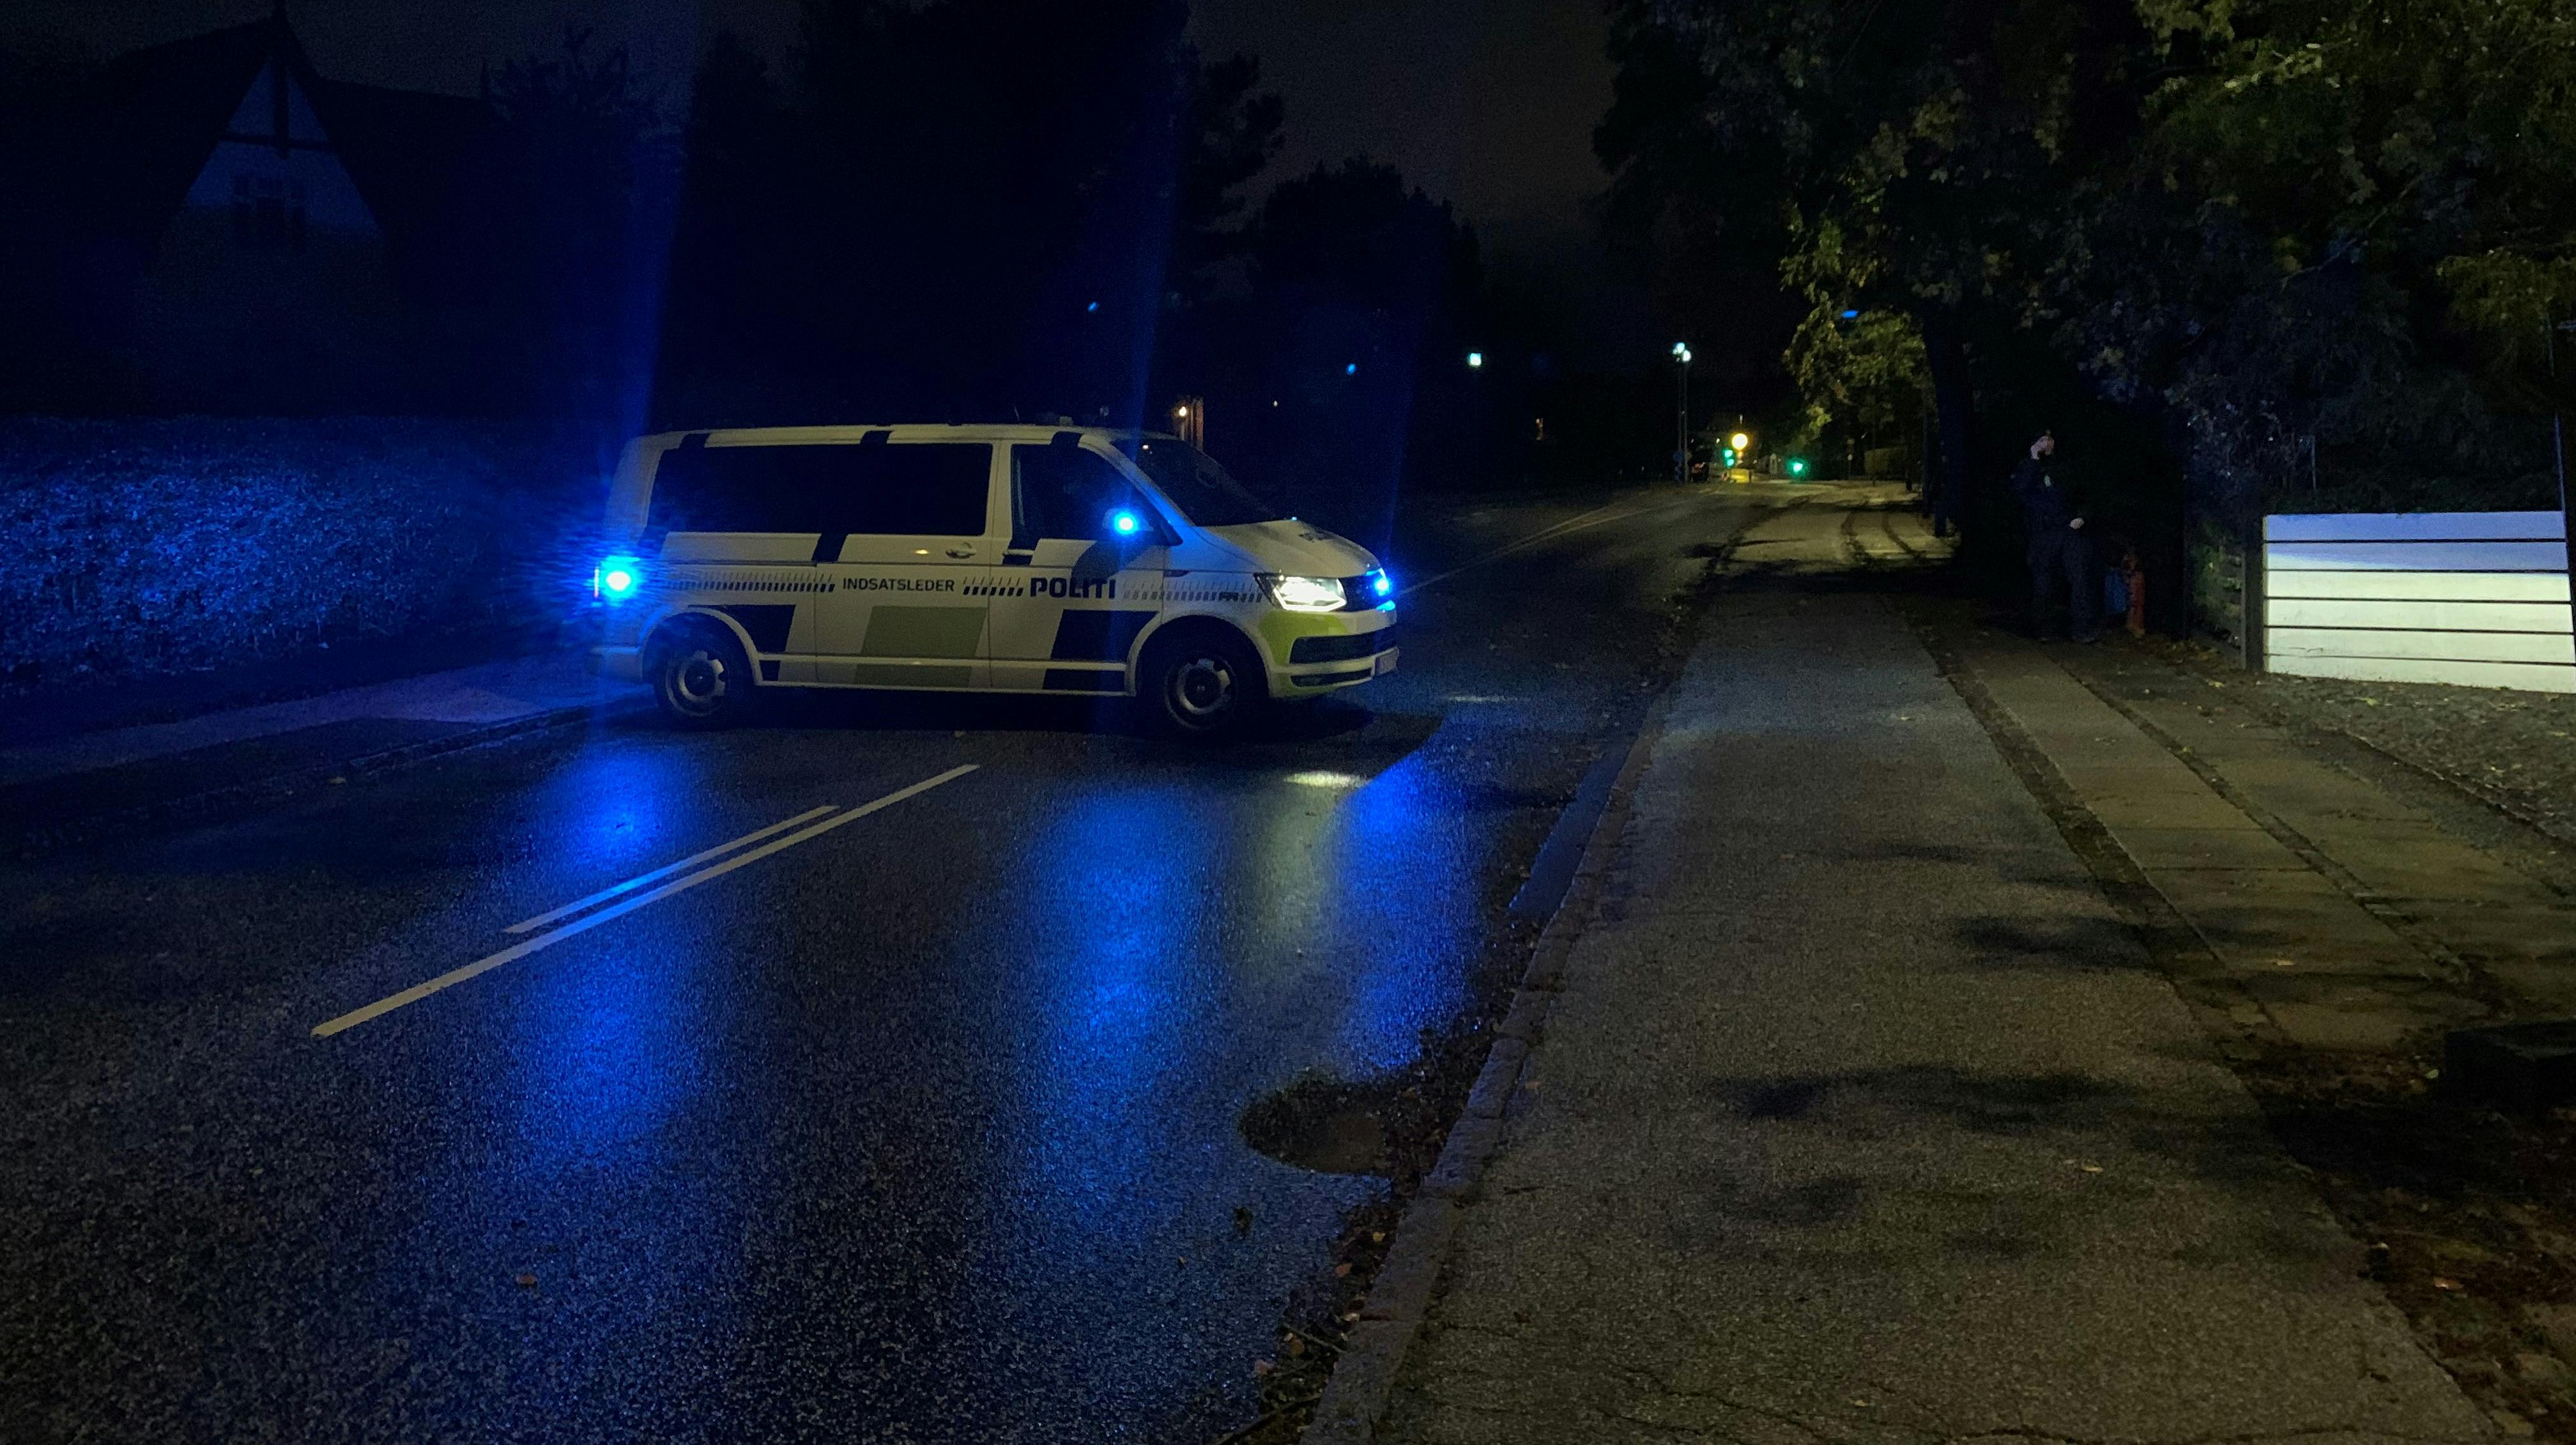 Ulykken fandt sted på Udbyhøjvej i Randers. 